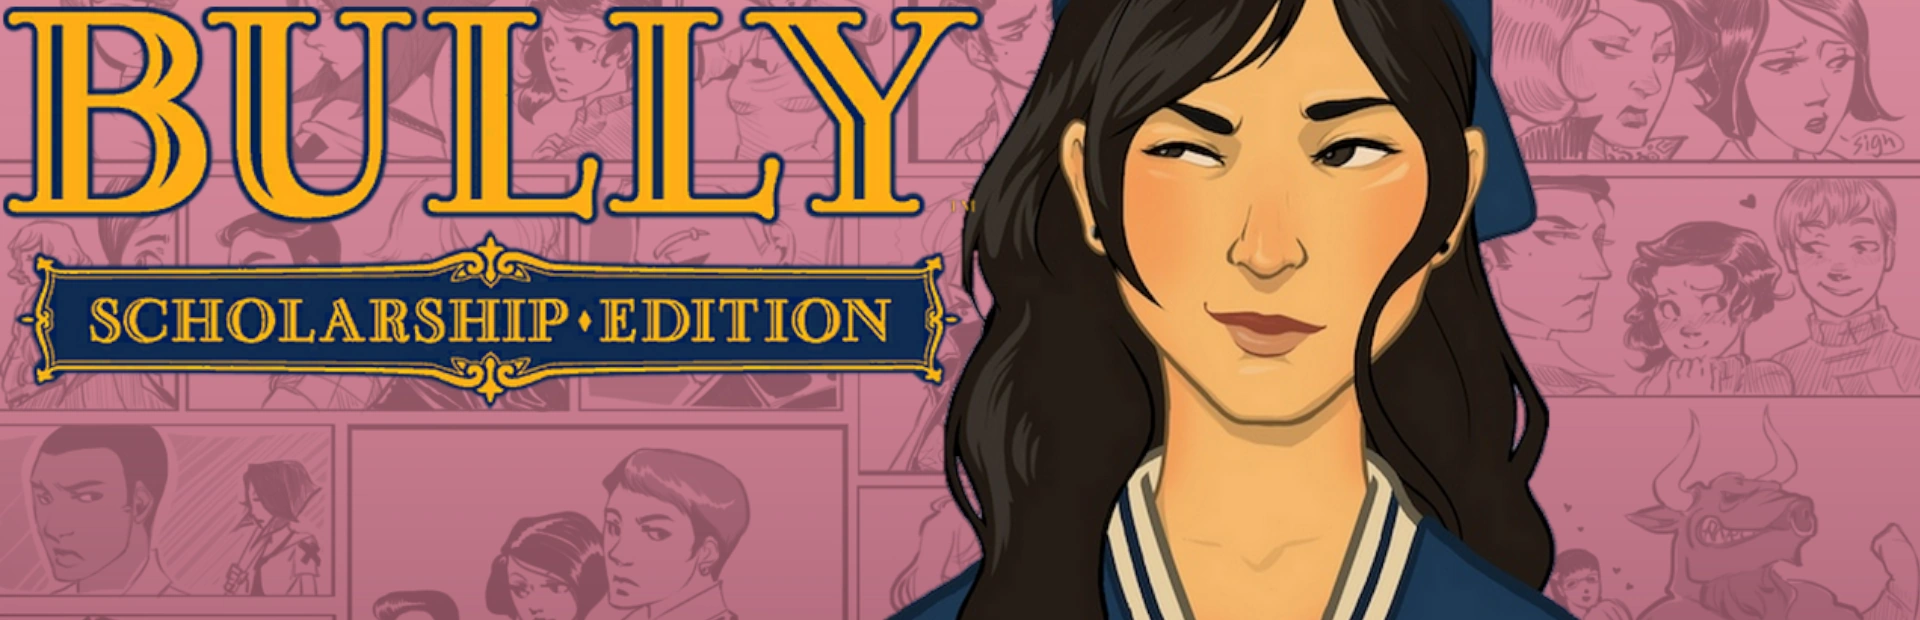 دانلود بازی Bully: Scholarship Edition برای PC | گیمباتو